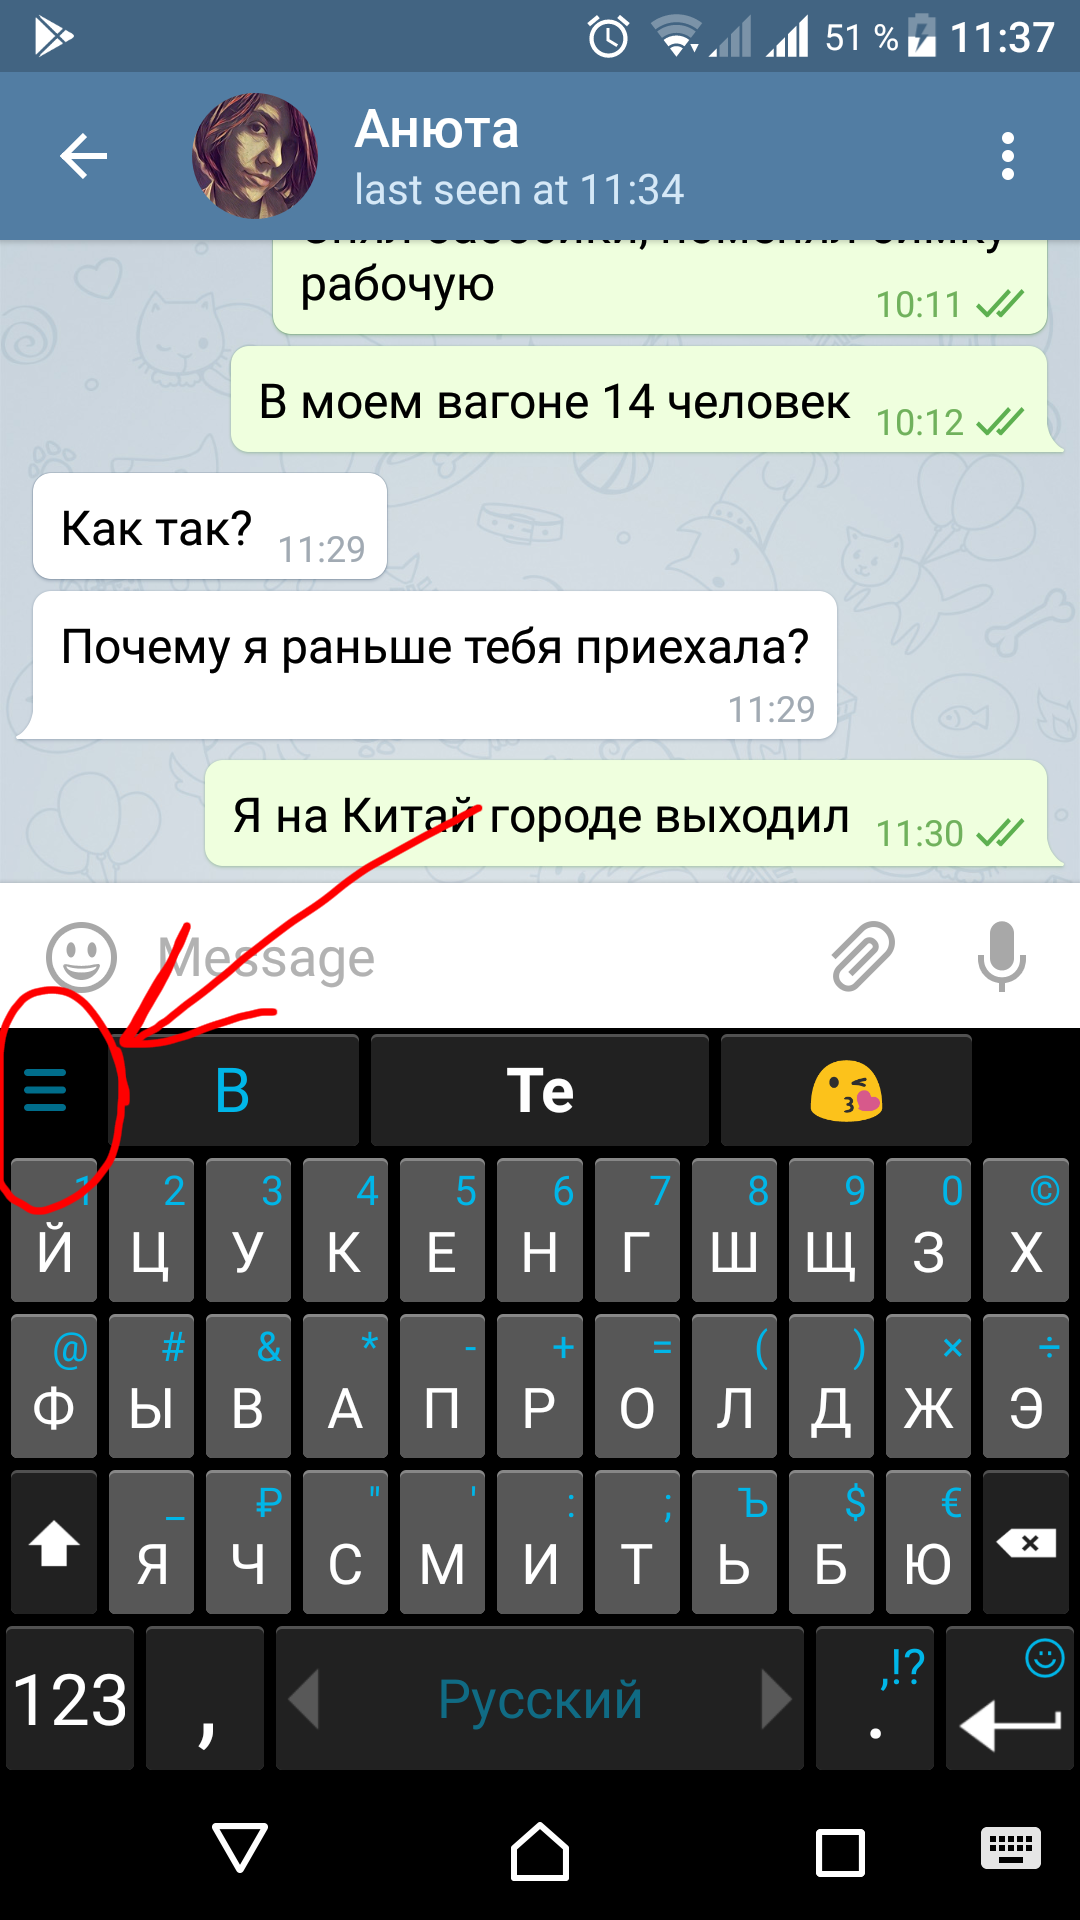 Как поставить на русский язык в телеграмме андроид фото 83